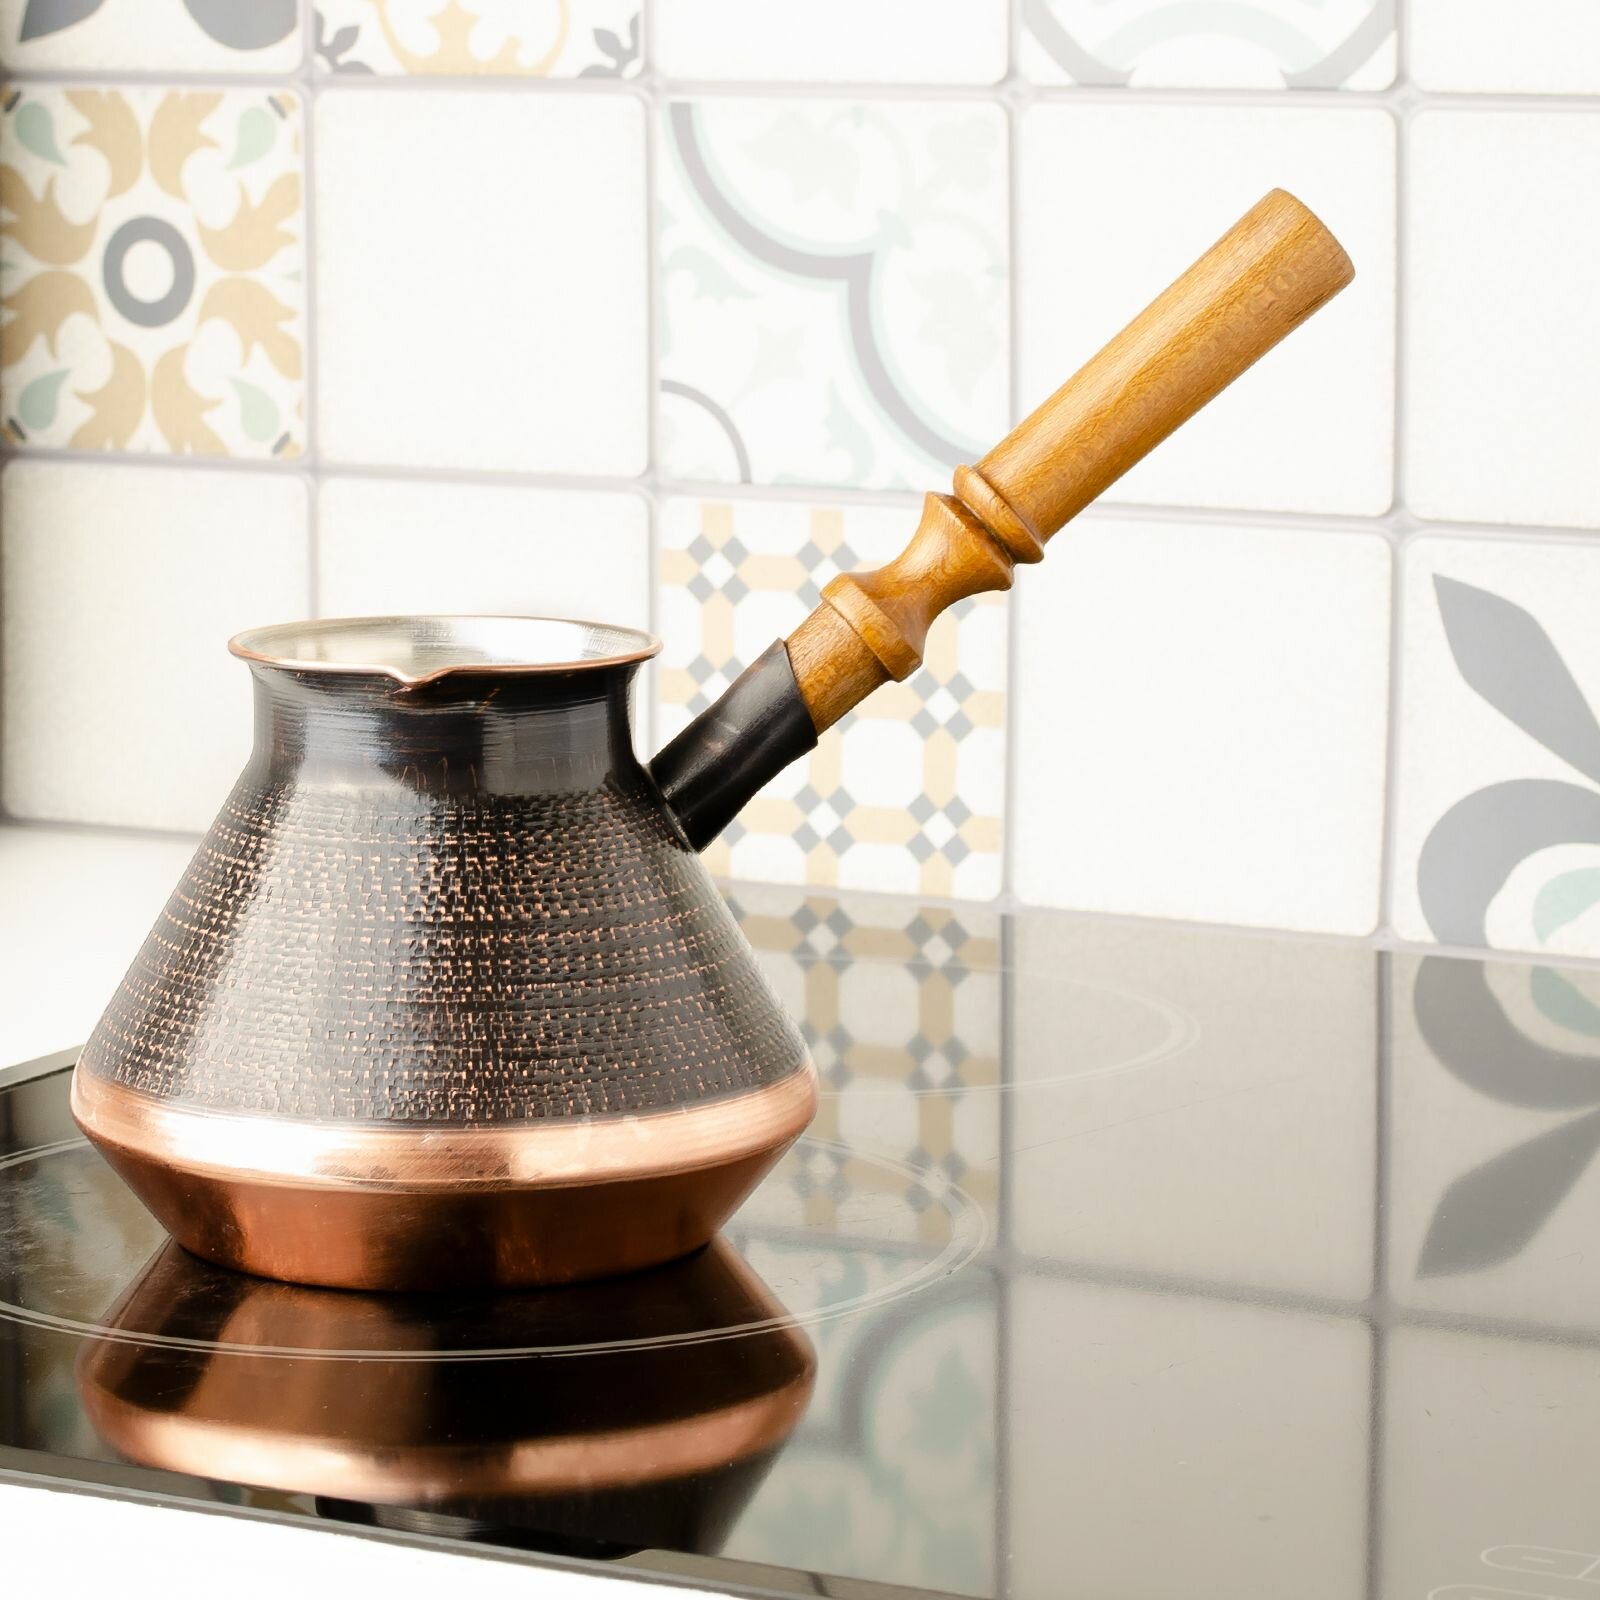 Турка для кофе медная 500 мл . Армянская джезва  кофеварка  подарок